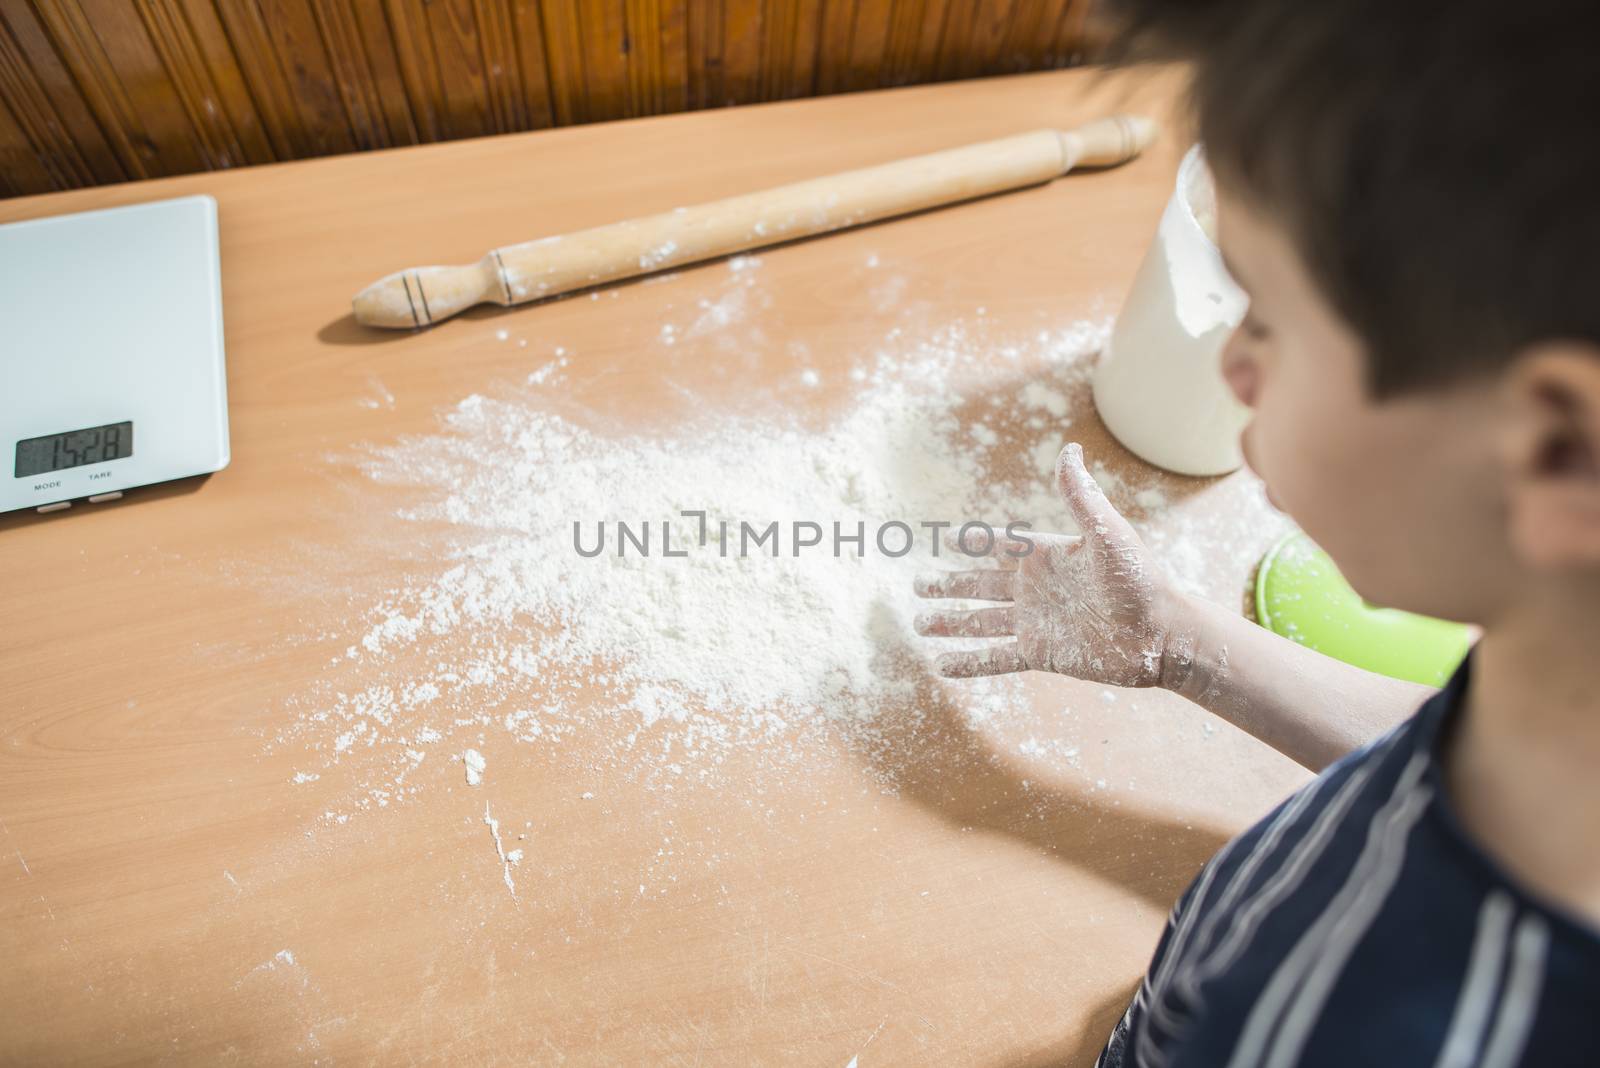 Making bread in a kitchen by deyan_georgiev